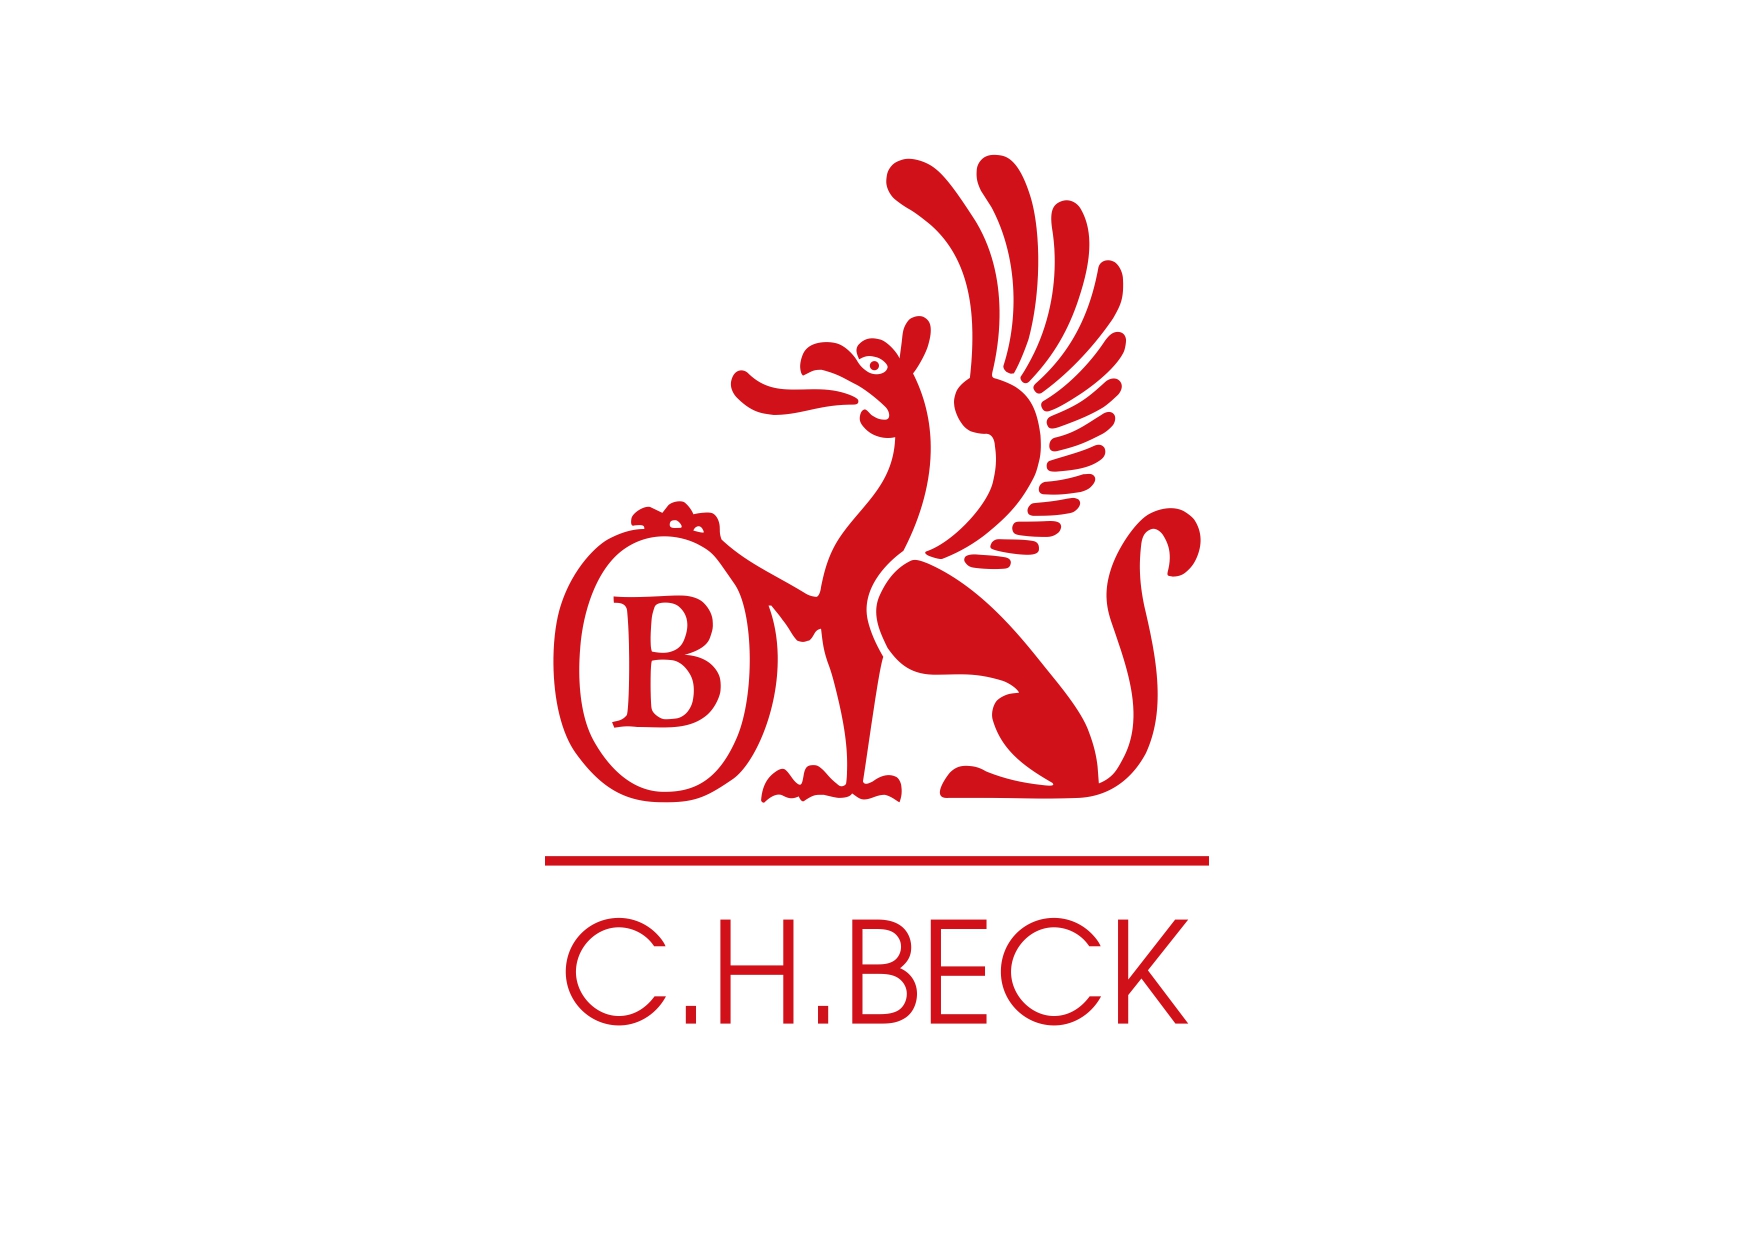 Publisher C.H. Beck logo